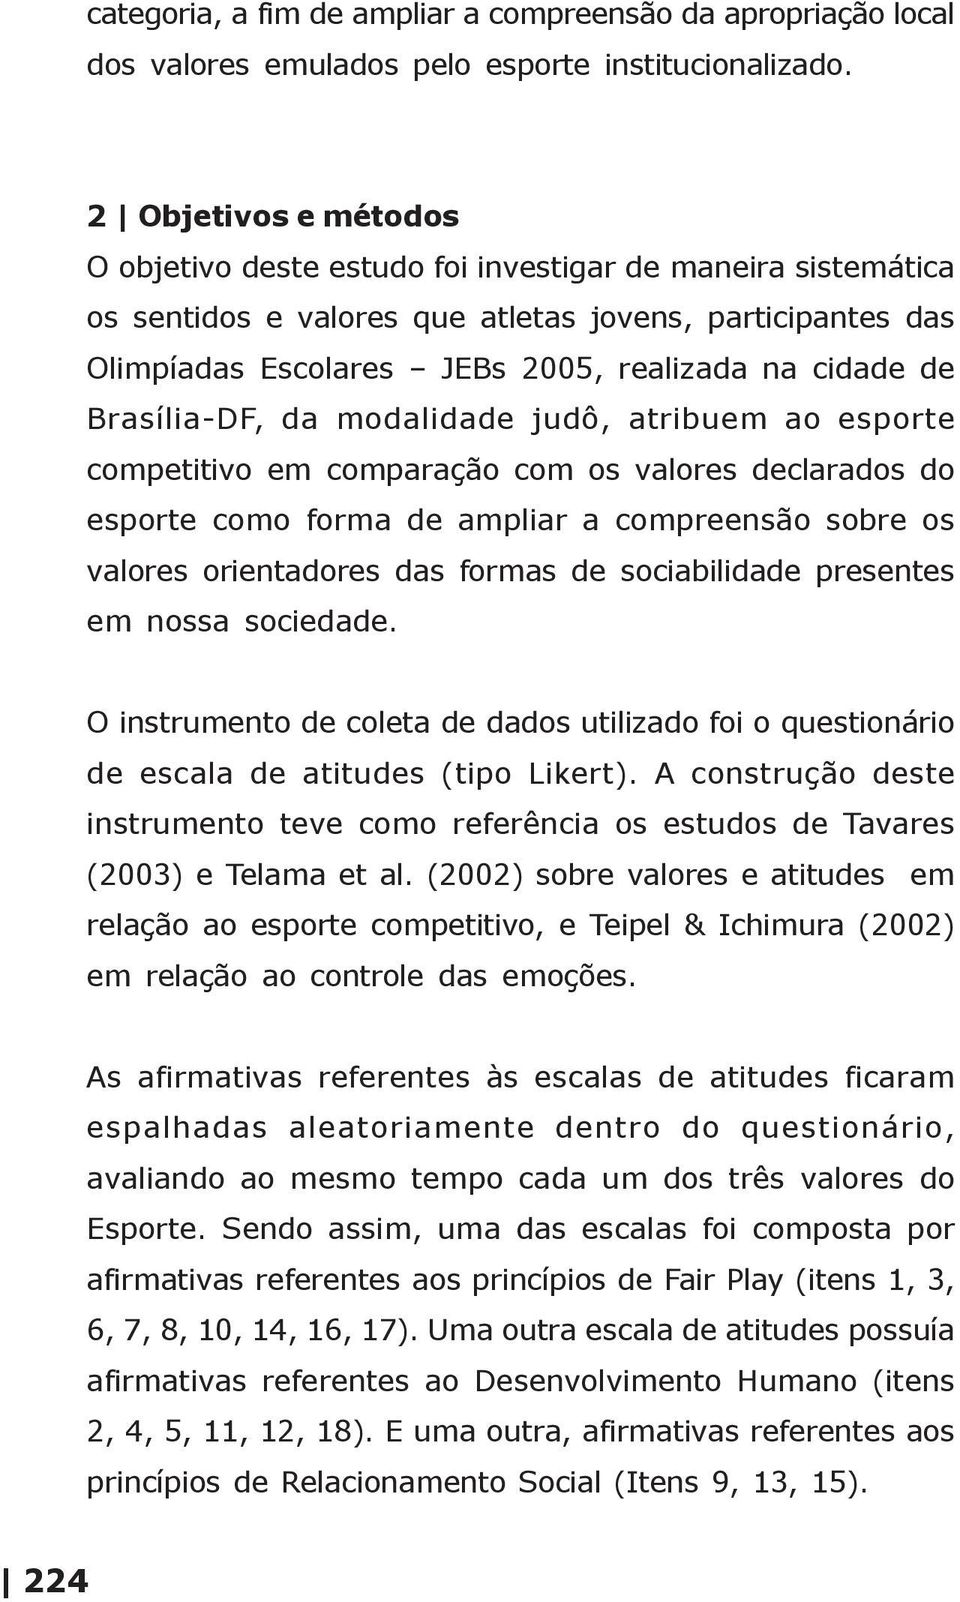 Brasília-DF, da modalidade judô, atribuem ao esporte competitivo em comparação com os valores declarados do esporte como forma de ampliar a compreensão sobre os valores orientadores das formas de